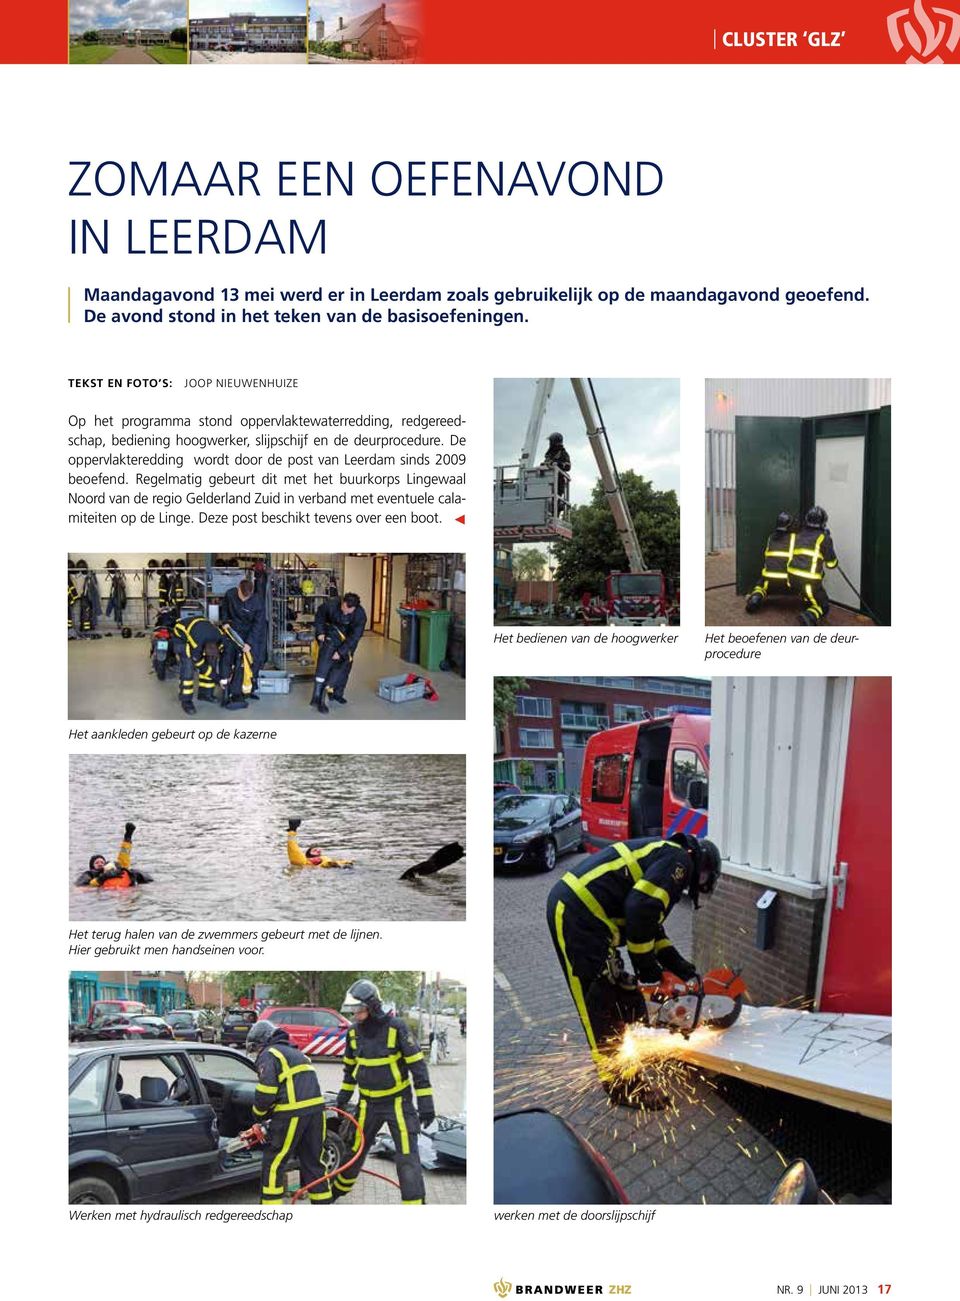 De oppervlakteredding wordt door de post van Leerdam sinds 2009 beoefend.